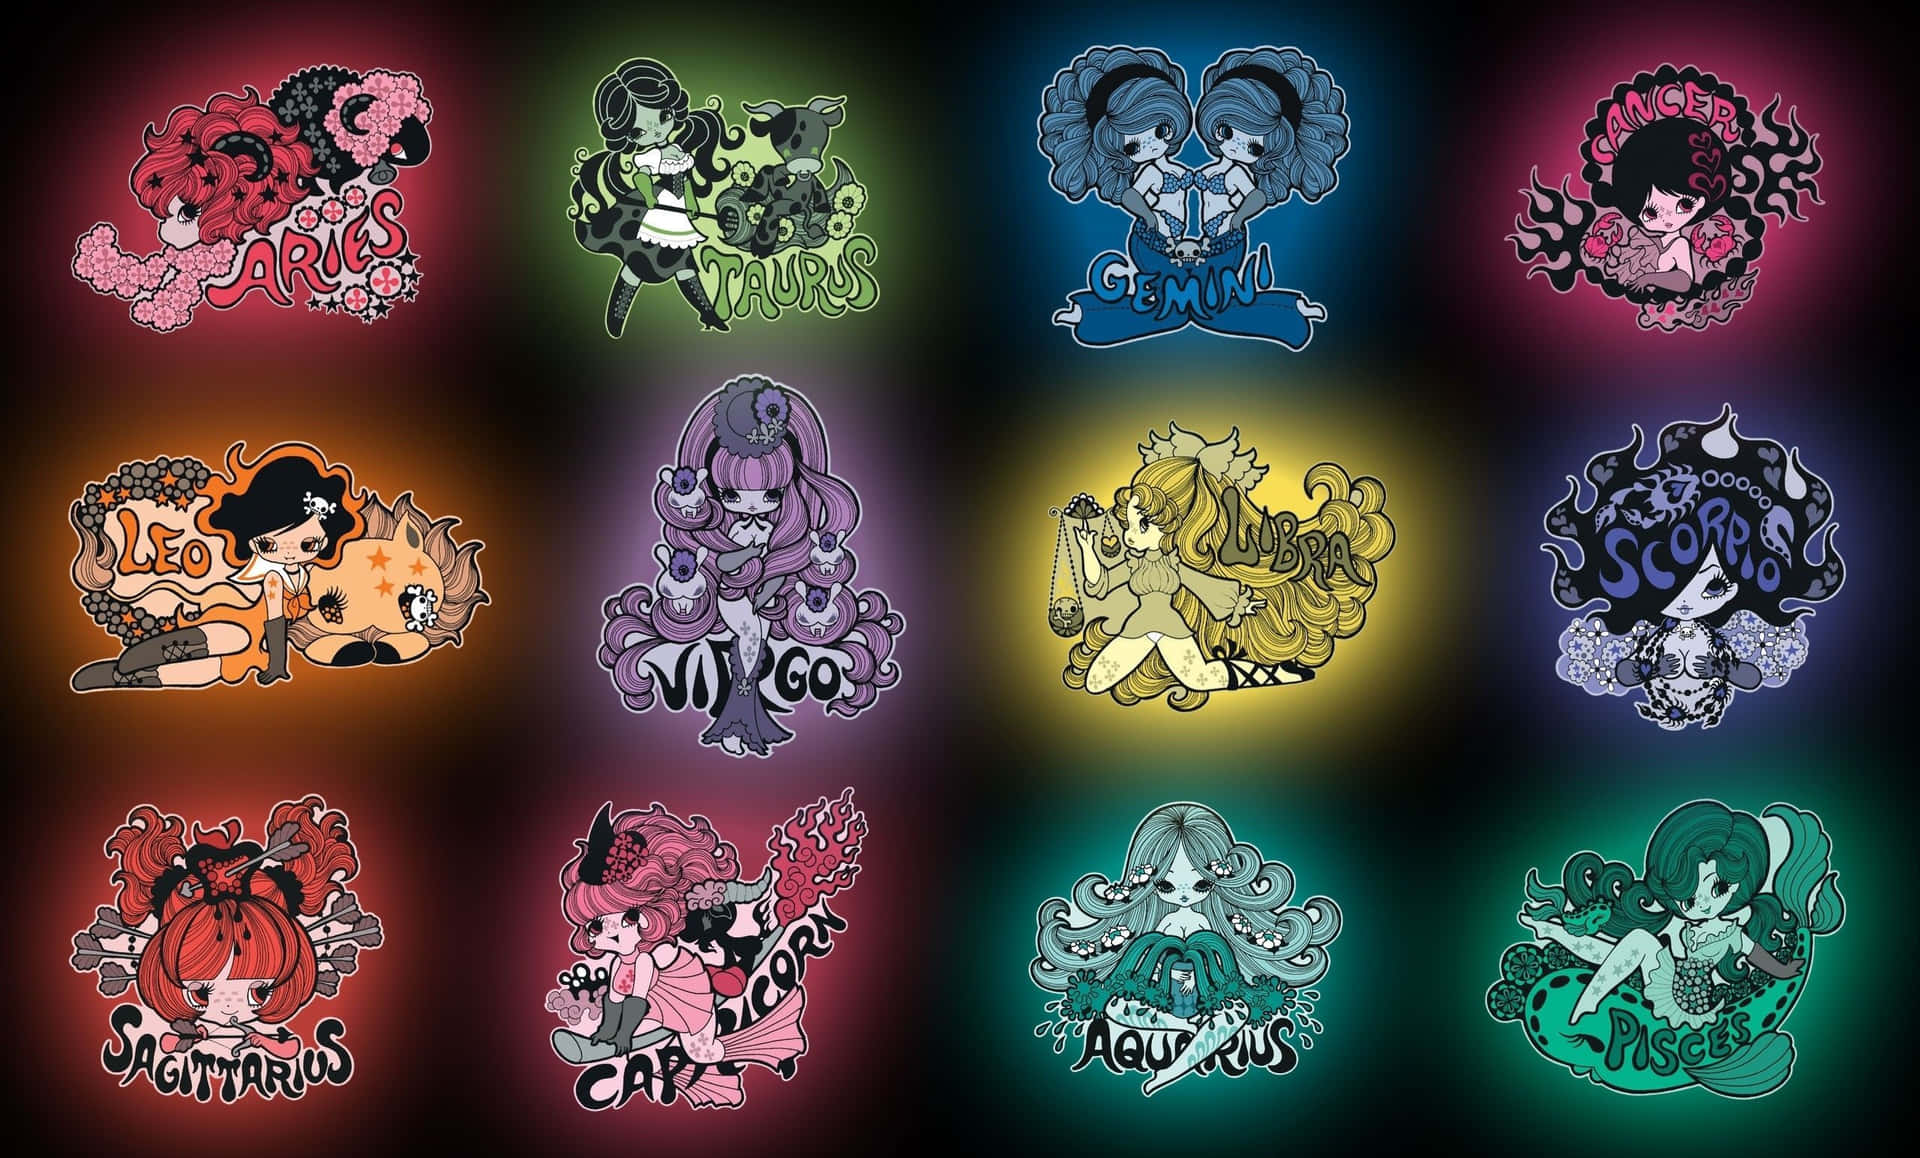 Einegruppe Verschiedenfarbiger Charaktere In Verschiedenen Farben.